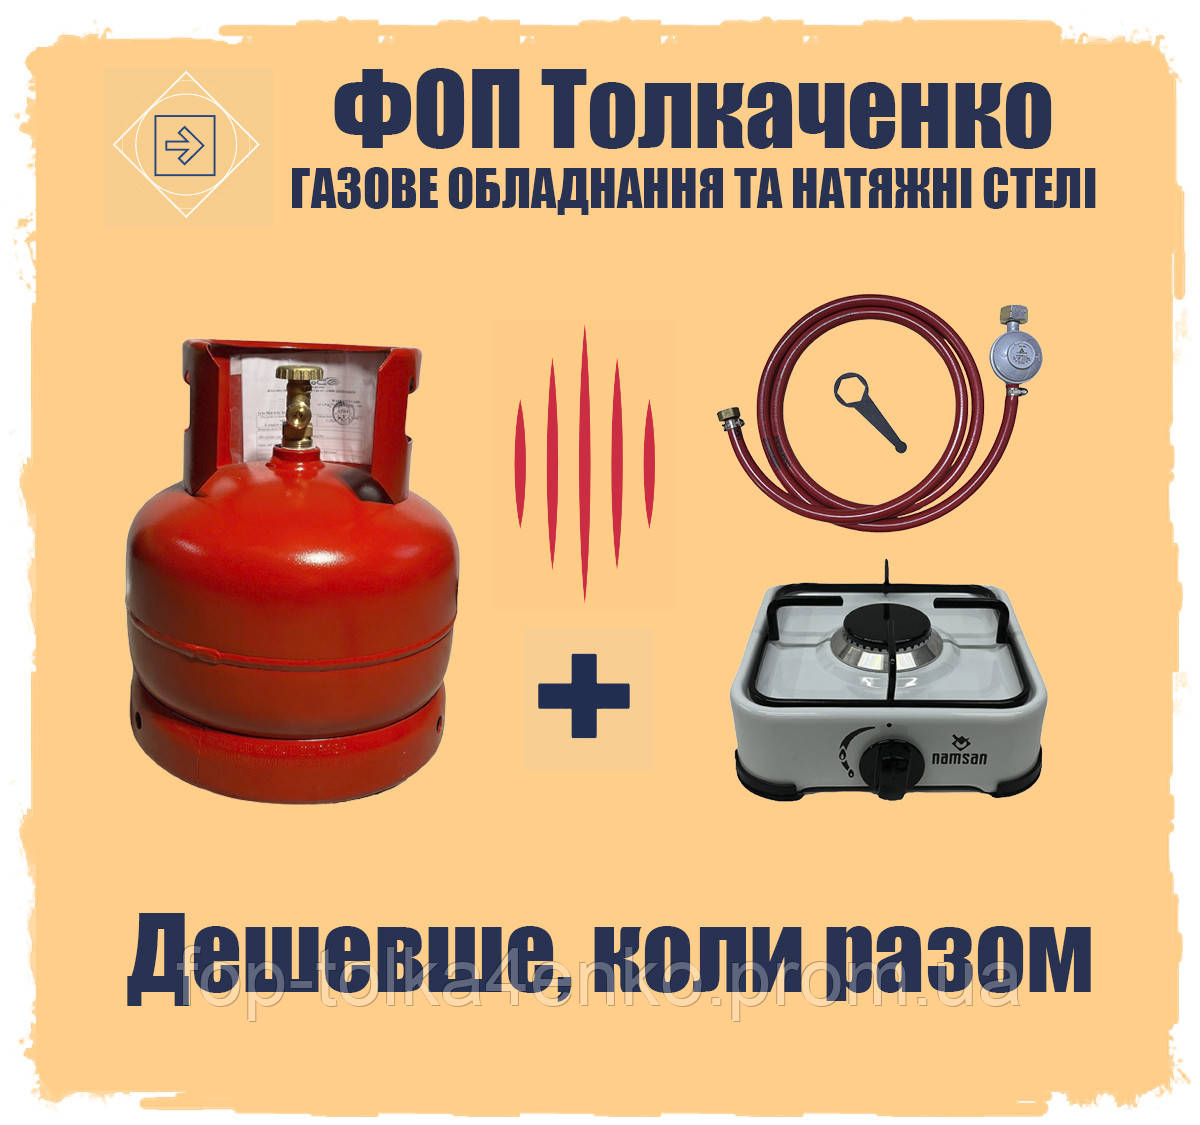 Балон газовий 12л металевий пропановий Болгарія + плита 1 конфорка + комплект підключення  редуктор